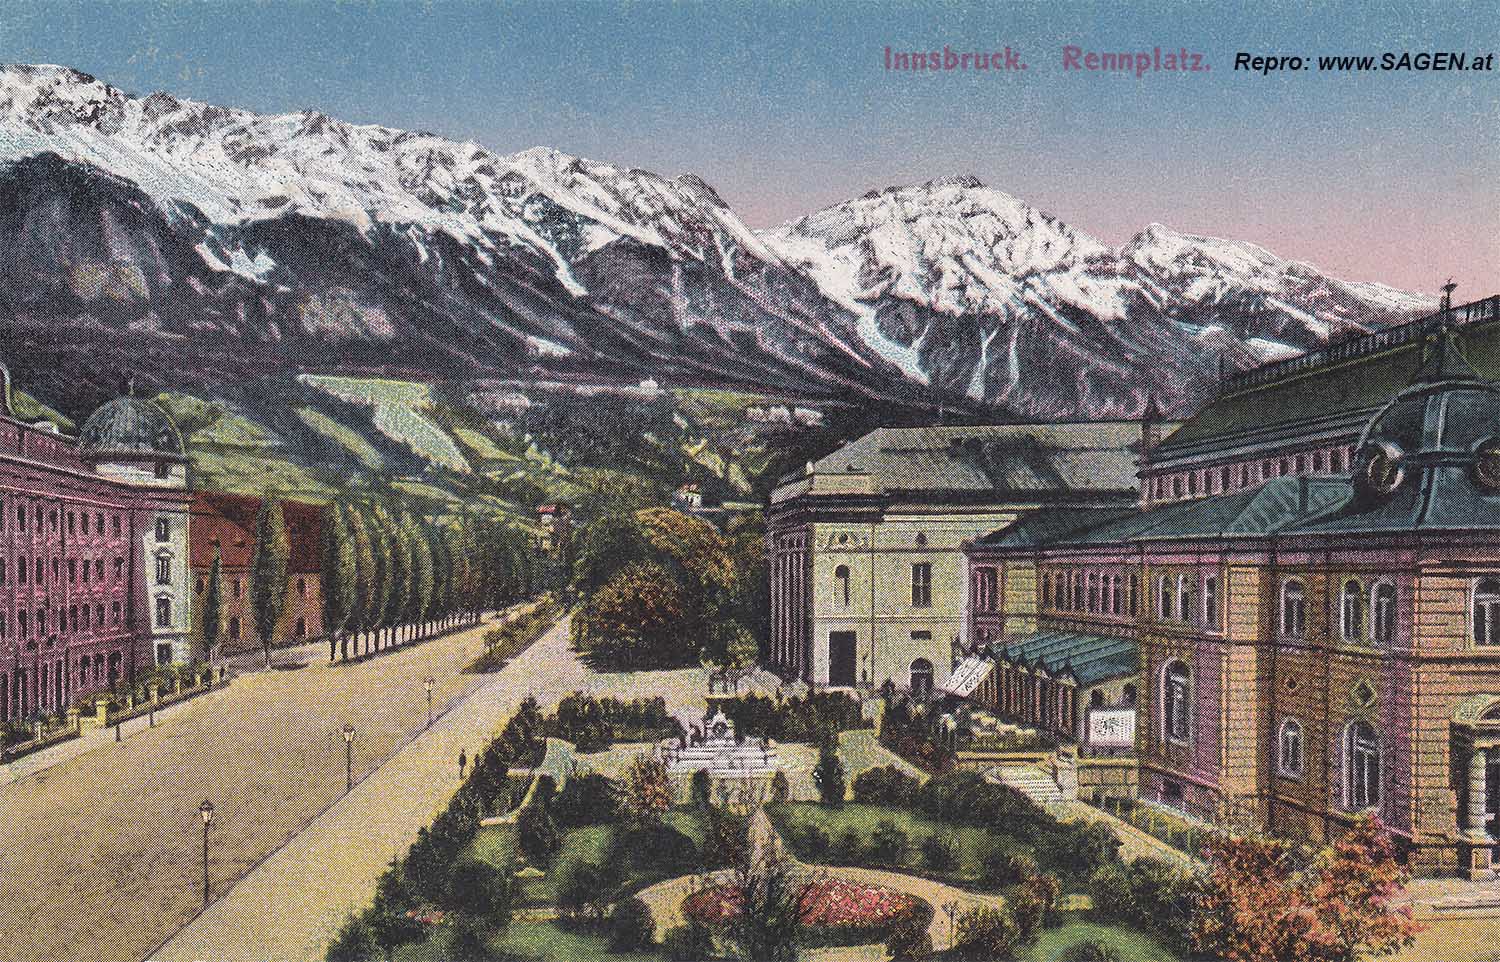 Innsbruck Rennplatz / Rennweg